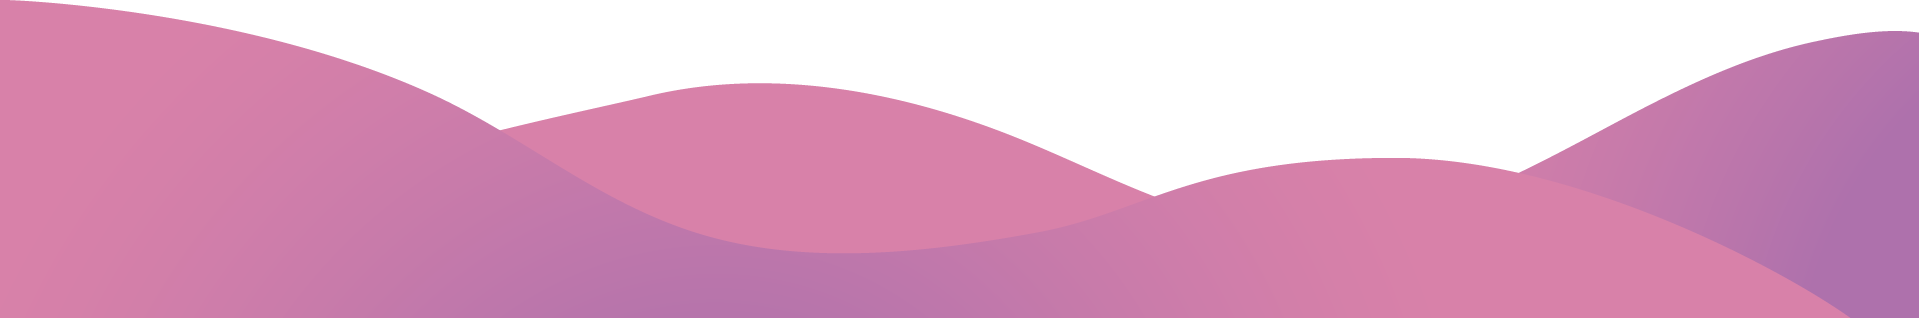 Pink waves image